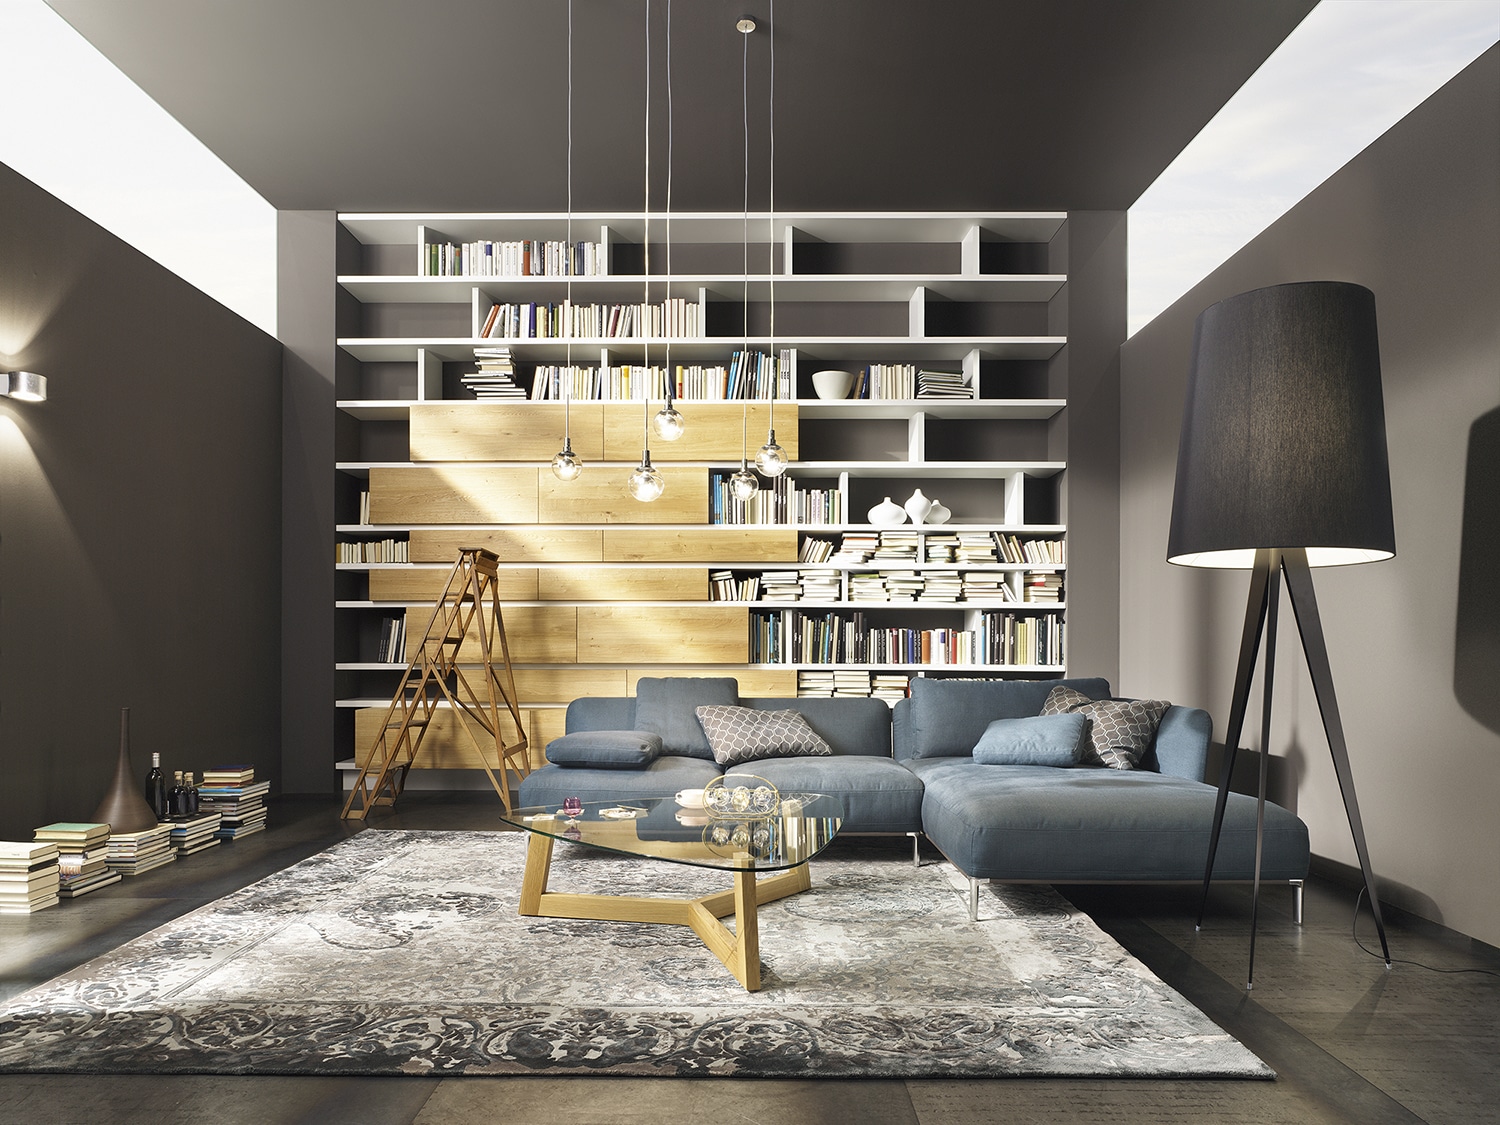 Mit Möbeln von haas ausgestattetes Wohnzimmer im Stil einer Bibliothek mit hohem, teils offenem Bücherregal samt Leiter, blauer Couch, auffälliger Stehlampe und Teppich.